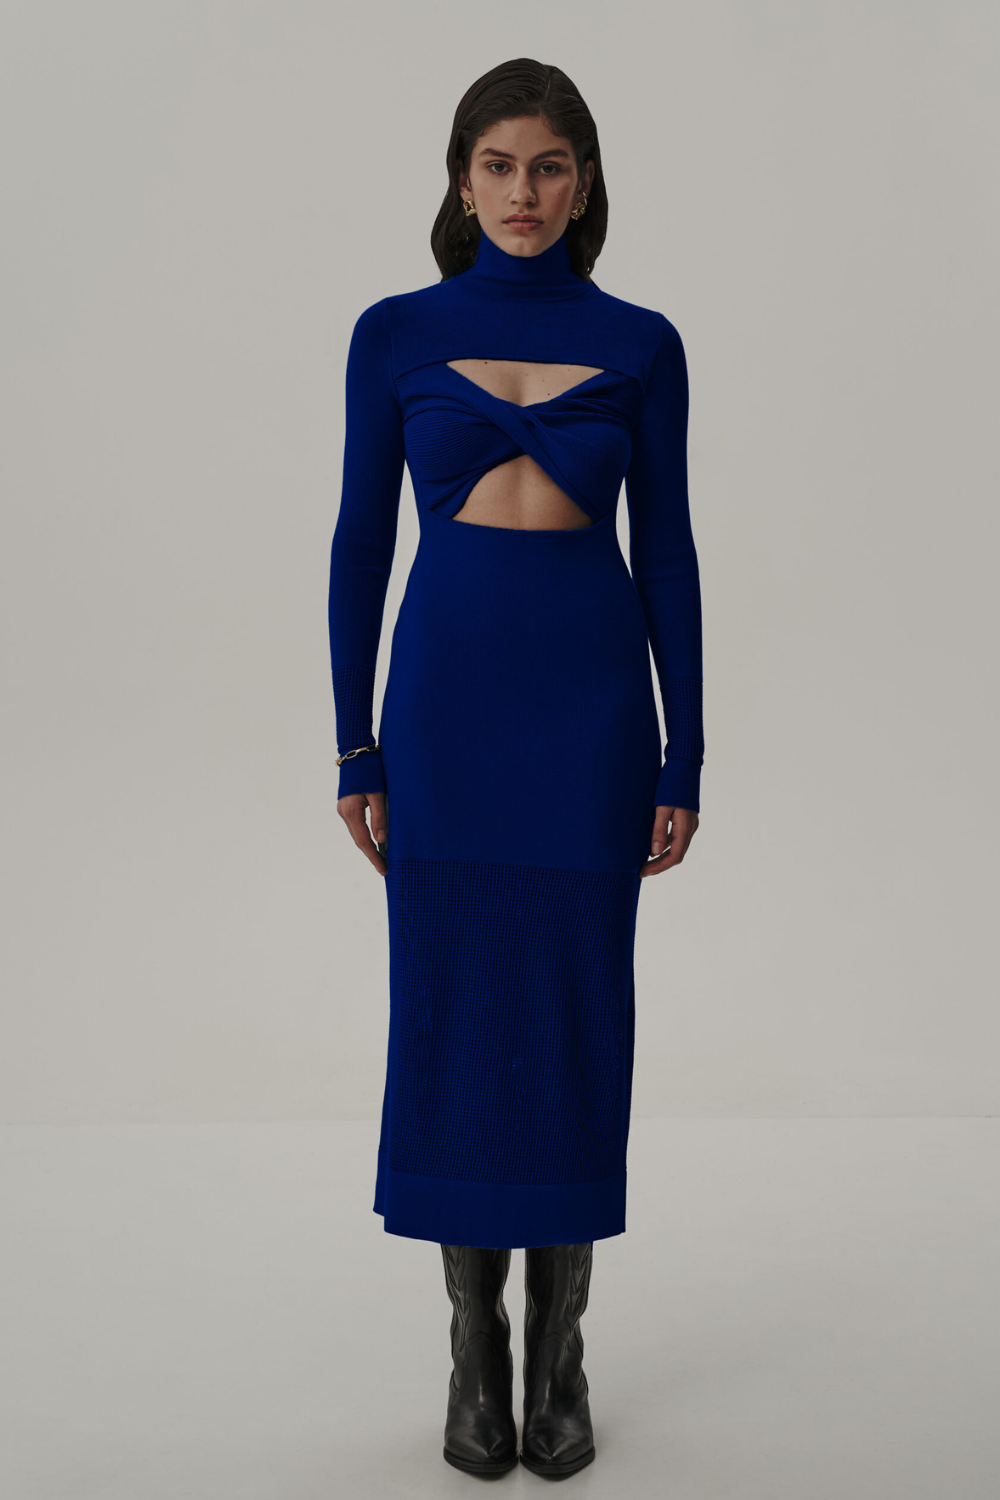 Šaty trikotážní s topem, modré, (T.Mosca), PEV23-01